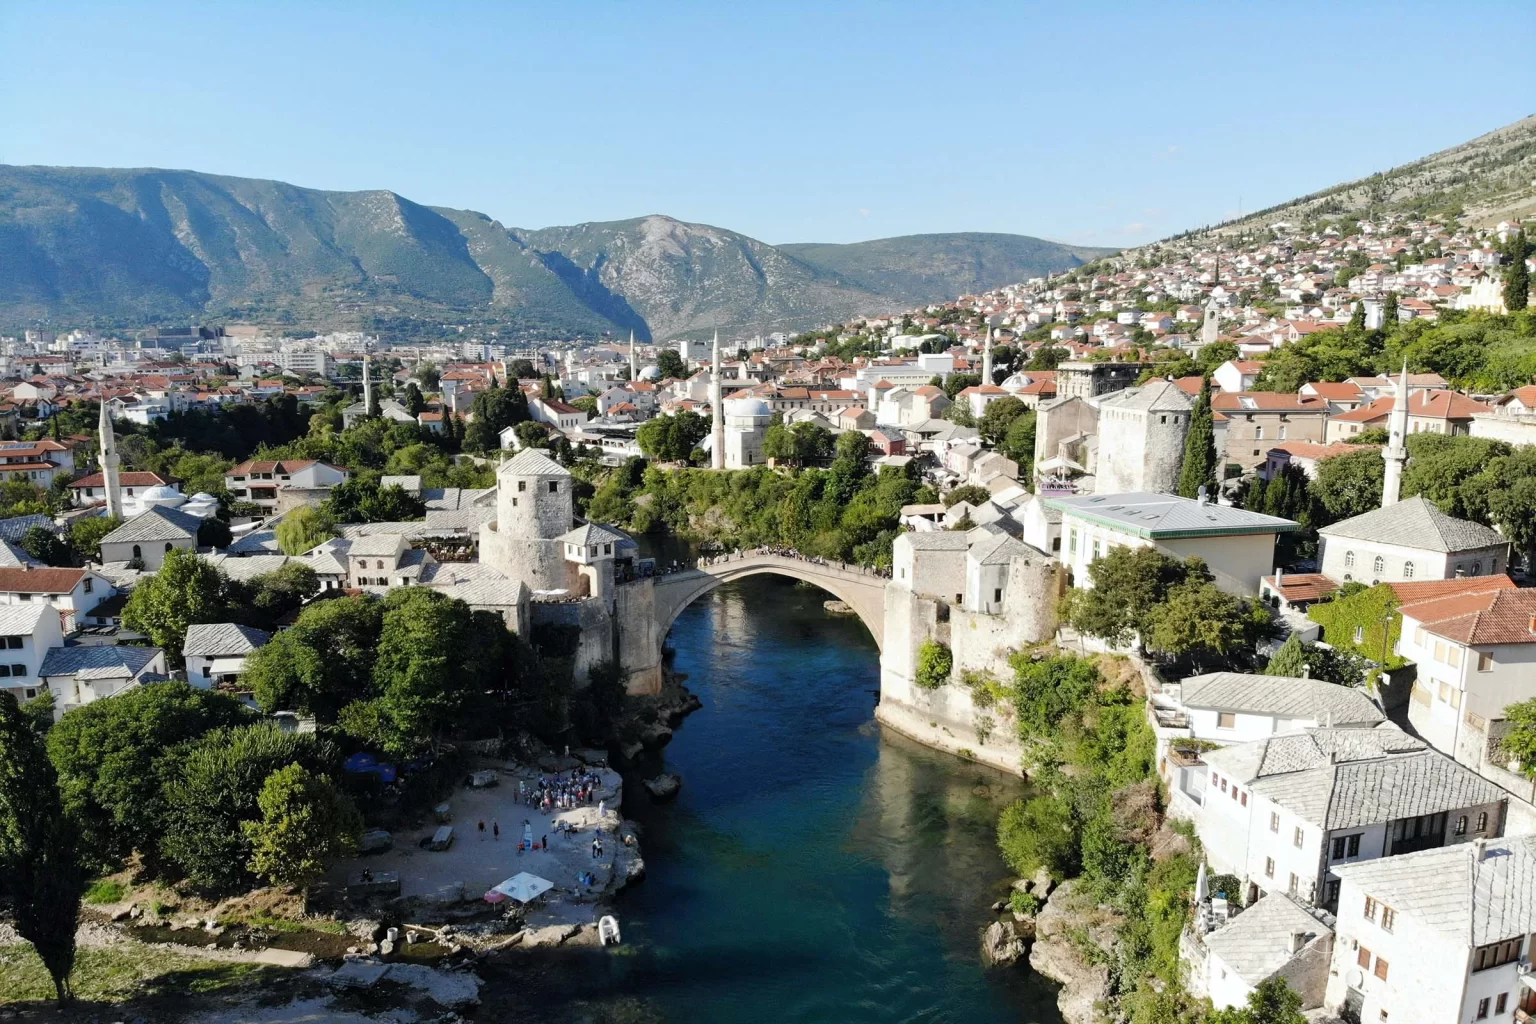 Босния и Герцеговина получила статус кандидата на вступление в ЕС